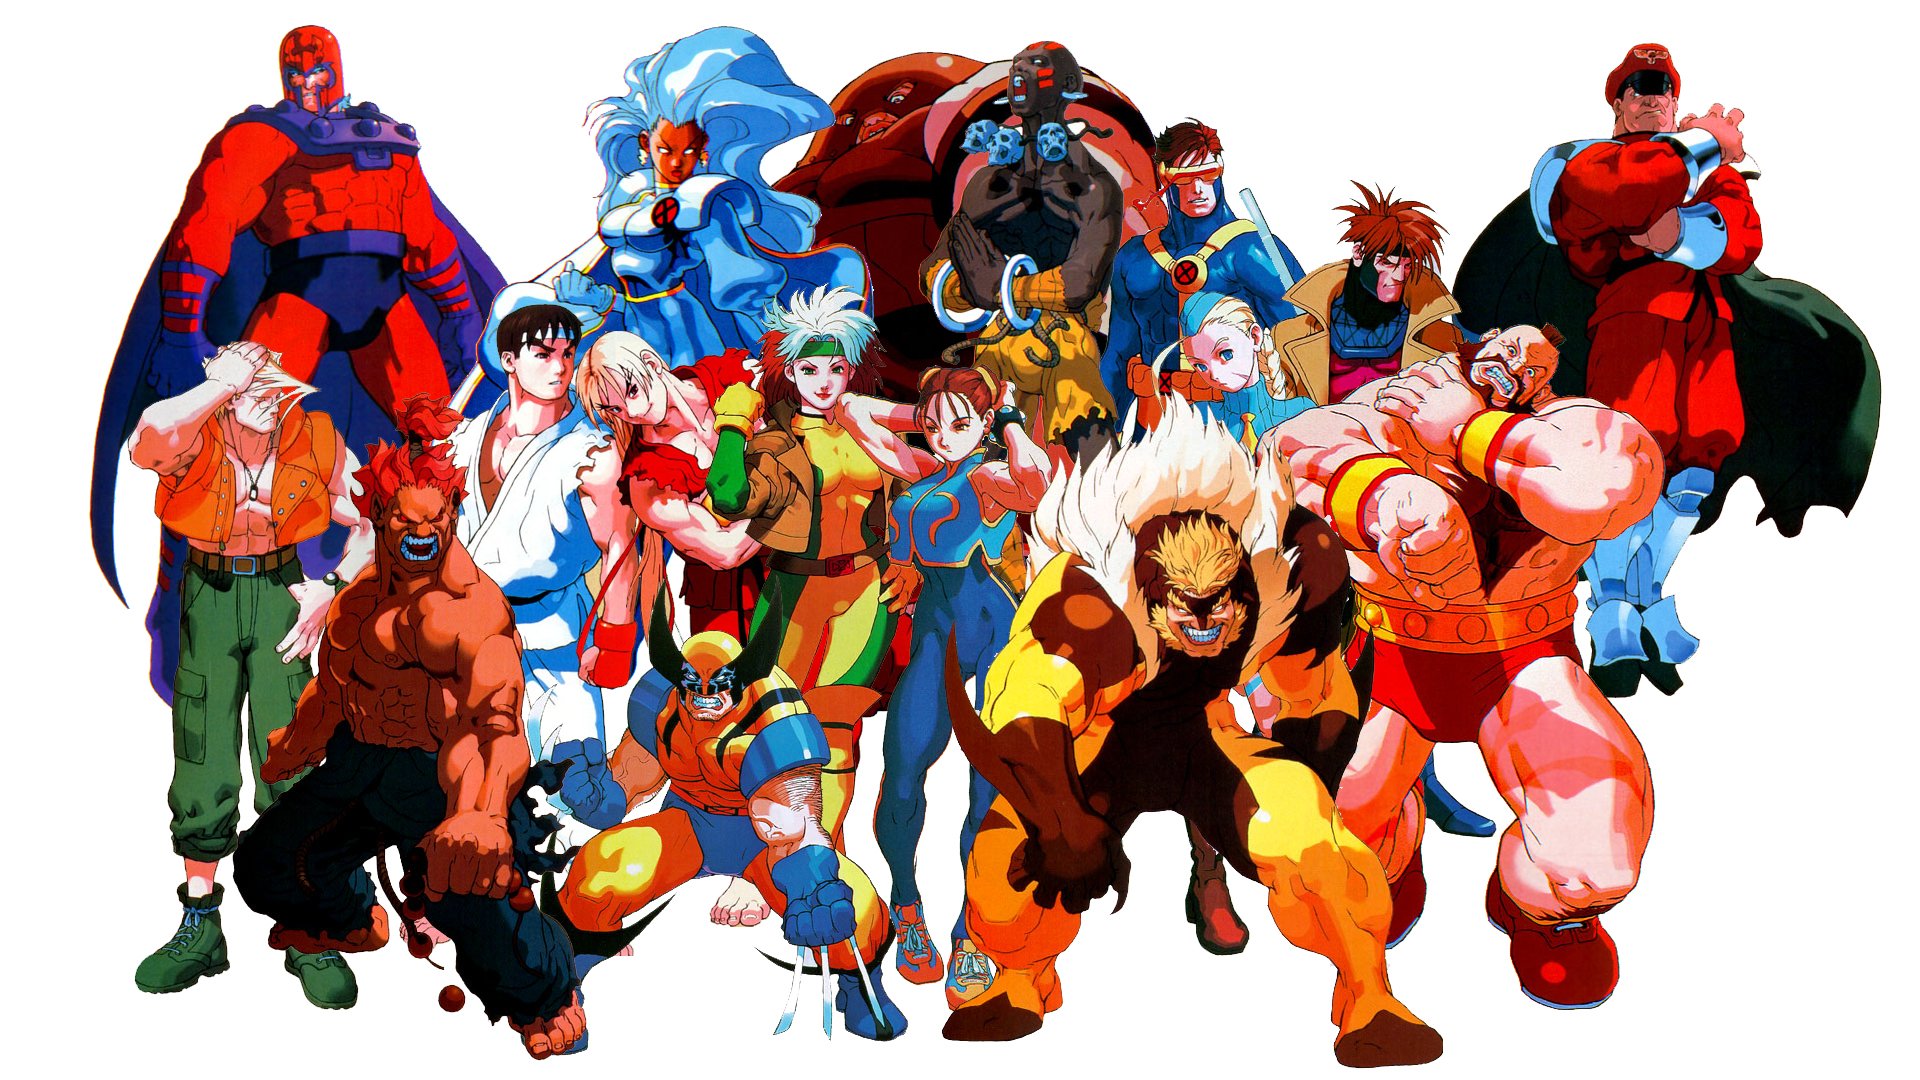 Street Fighter Game Wallpaper Hd - Xmen Vs Street Fighter Art - HD Wallpaper 